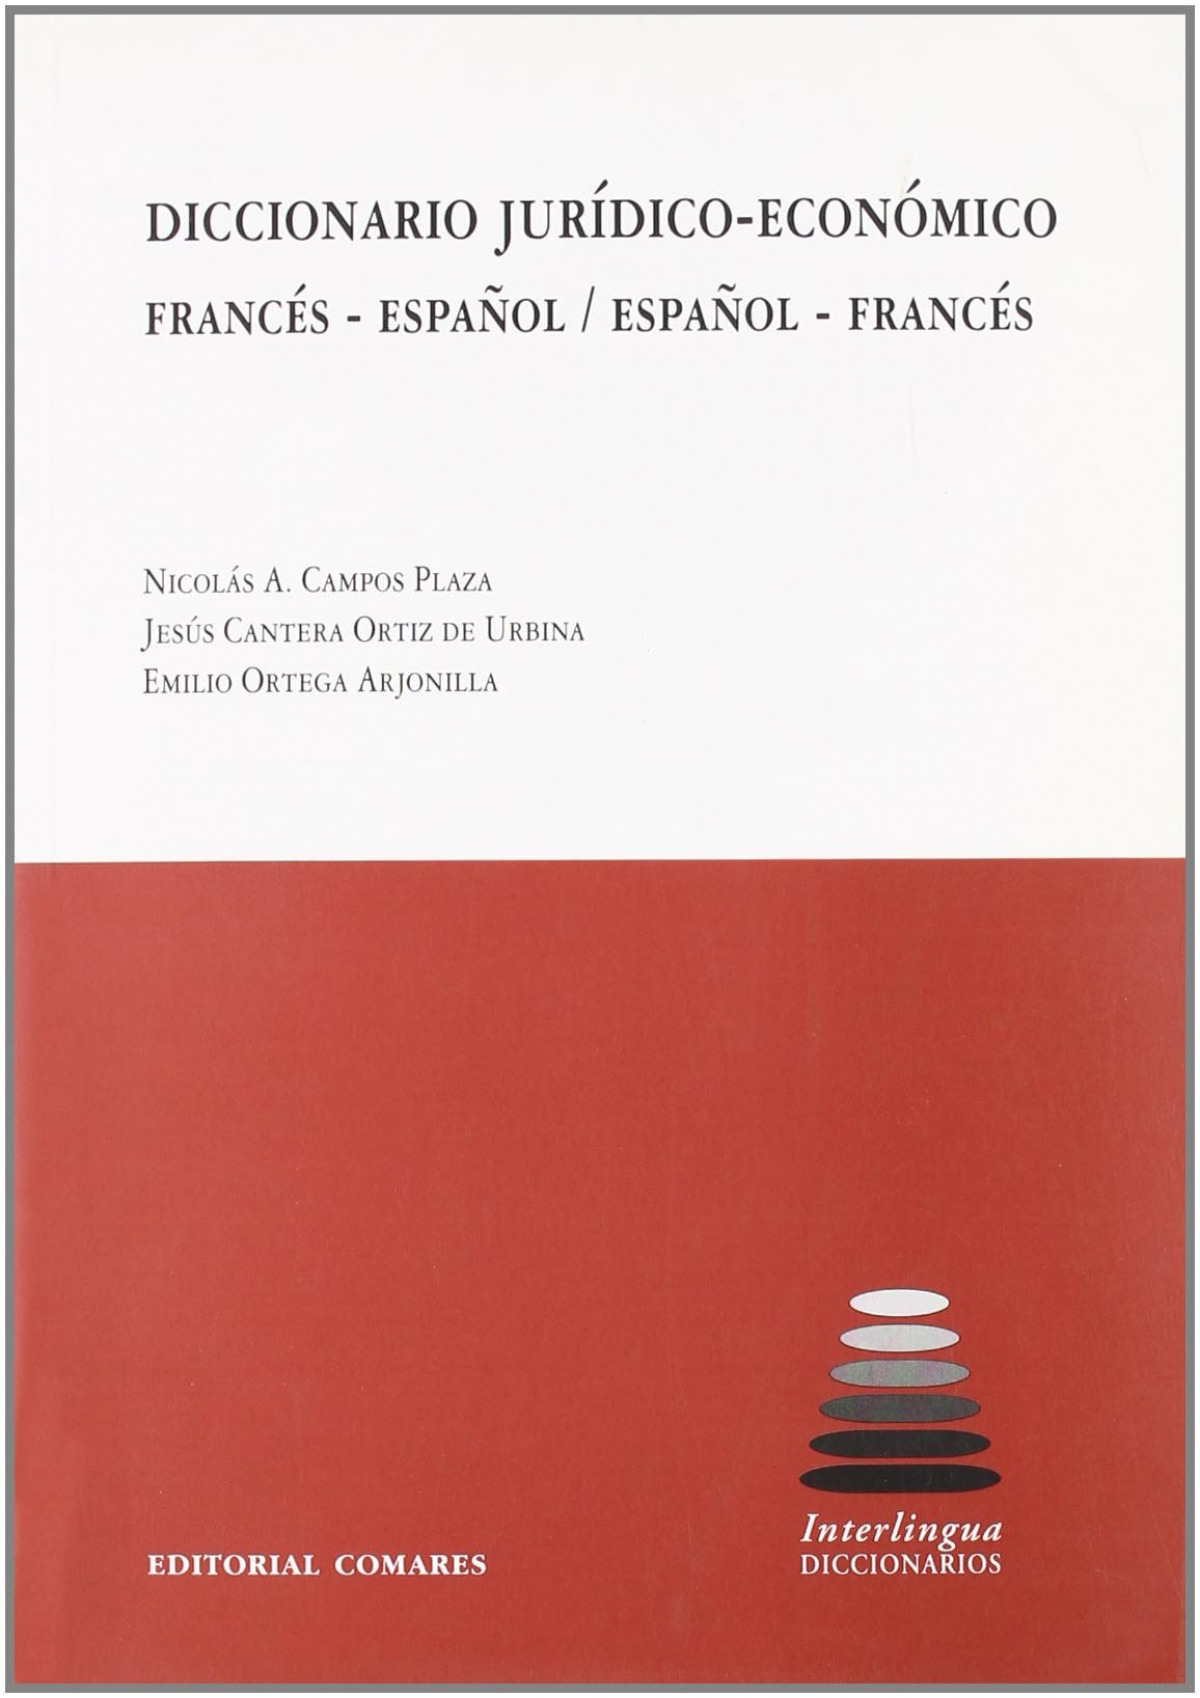 Diccionario jurídico-económico francés-español, español-francés